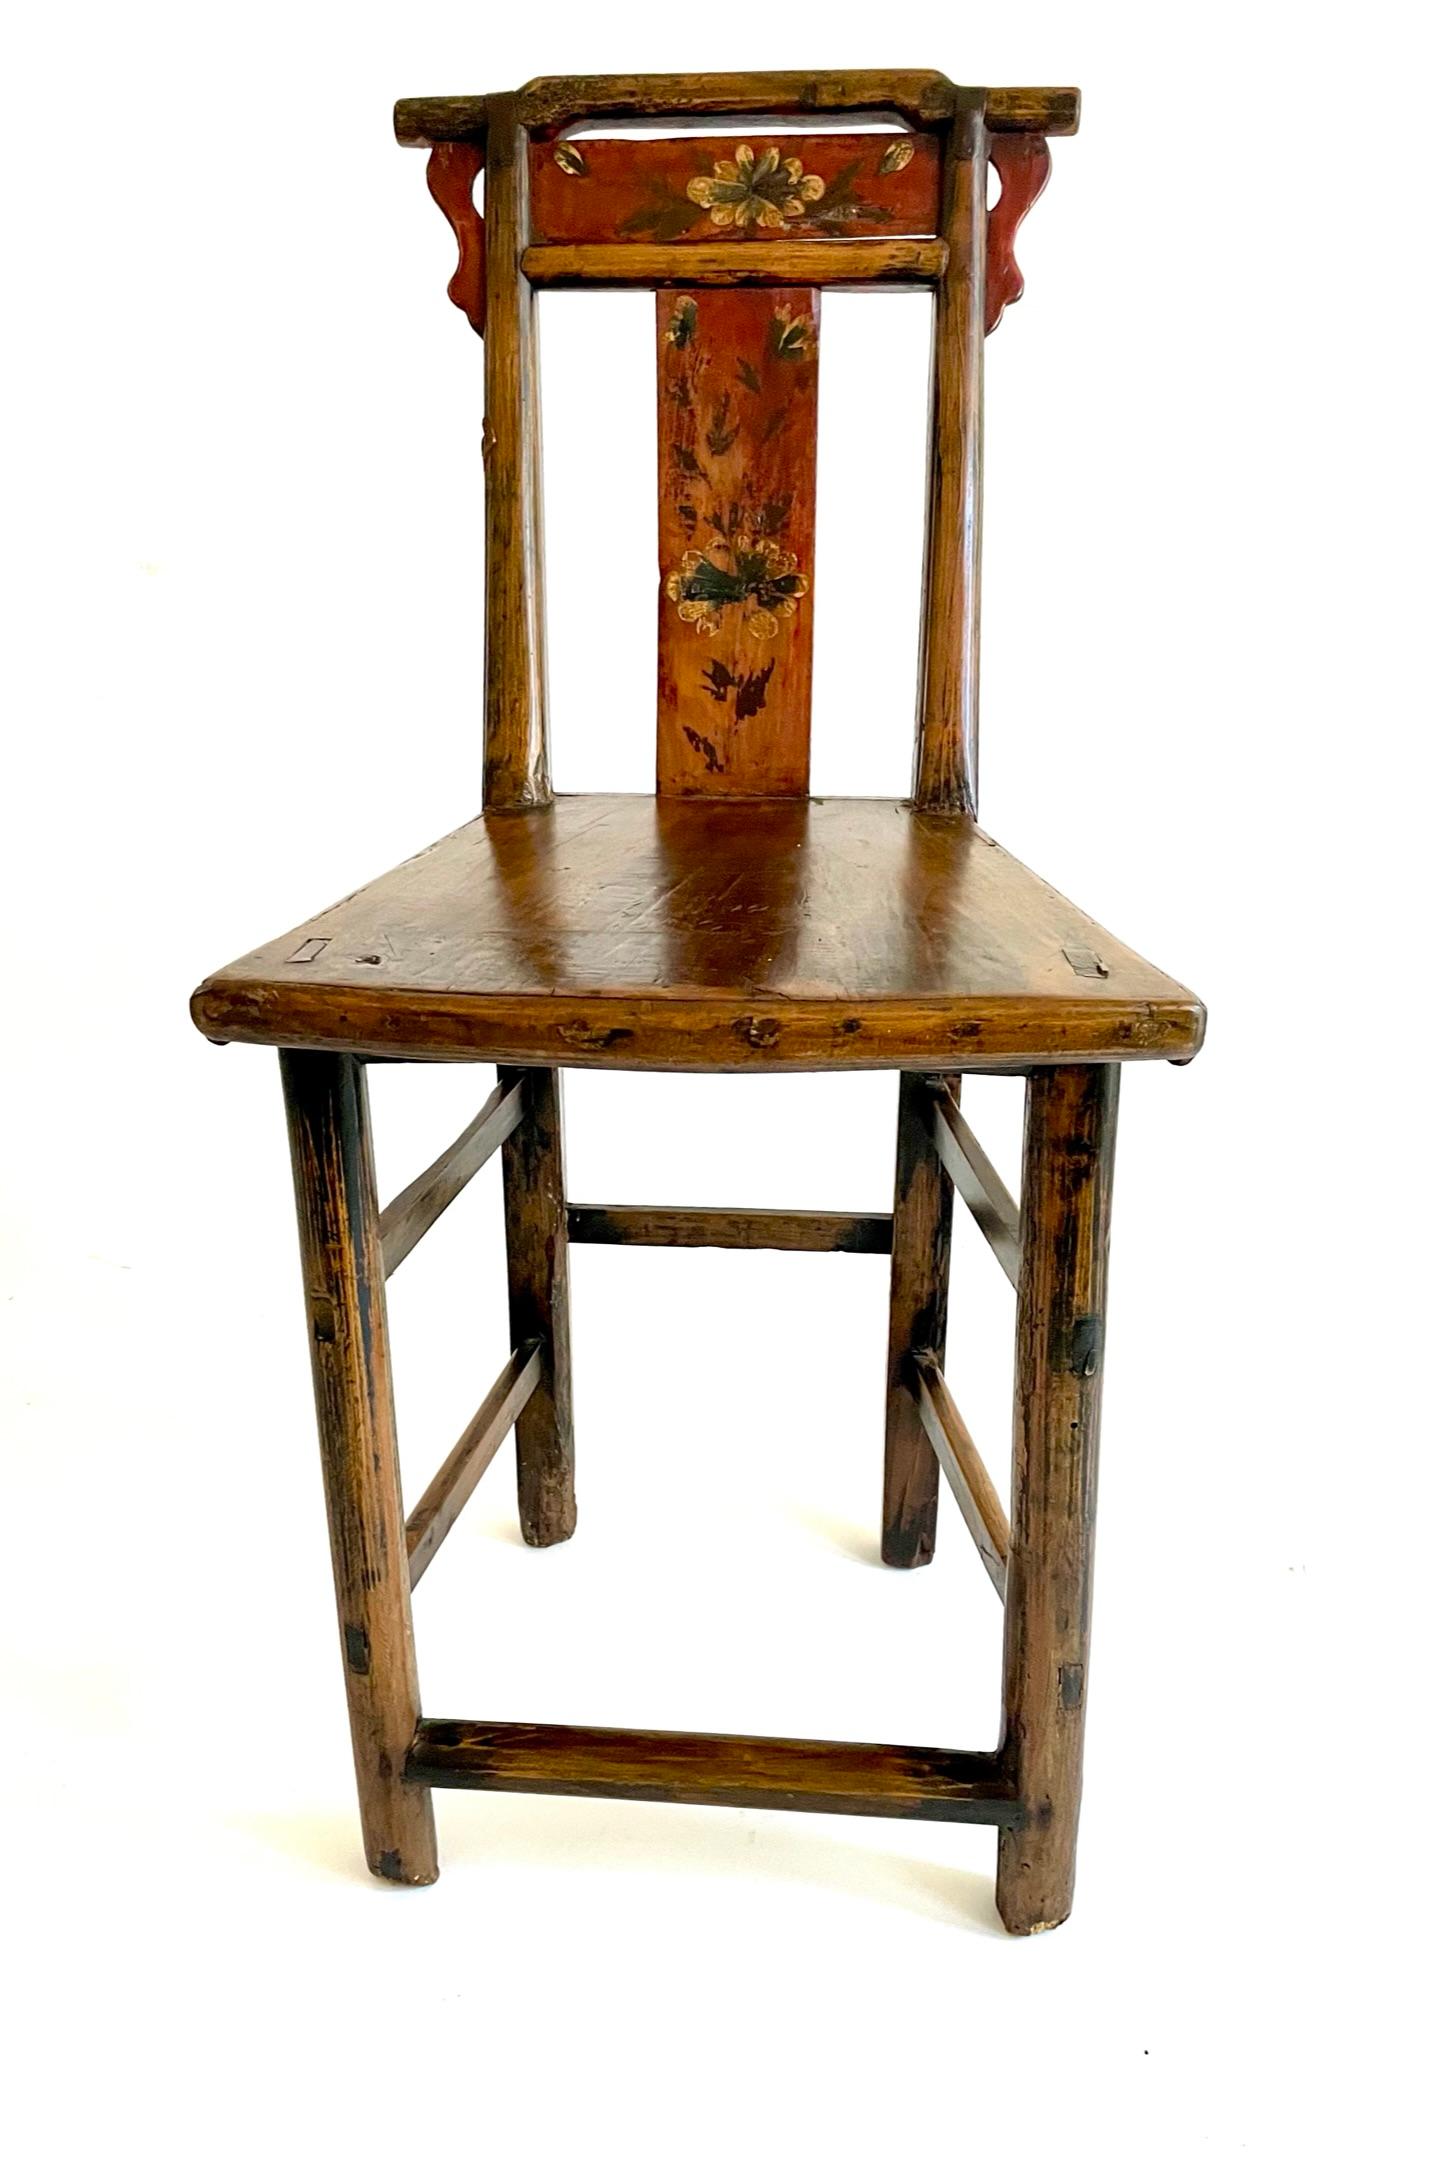 Il s'agit d'une paire inhabituelle de chaises chinoises peintes de la fin du XVIIIe siècle. Le dossier est peint d'un motif floral qui rappelle l'art populaire. La forme de l'assise est un éventail géométrique. Ces chaises proviennent de la province